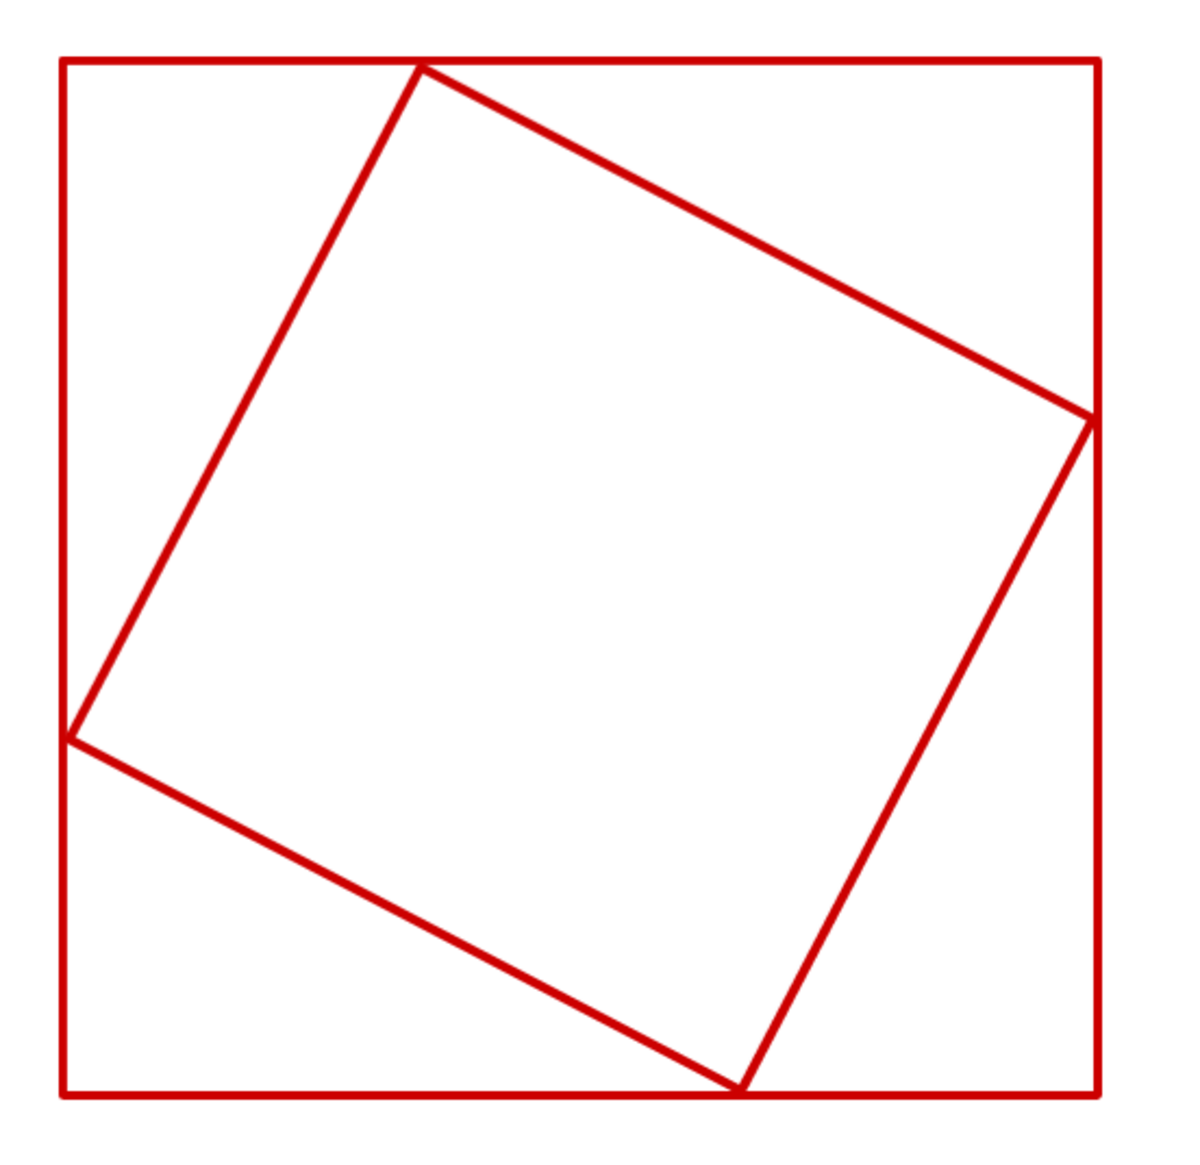 pythagoras-theorem-a-proof